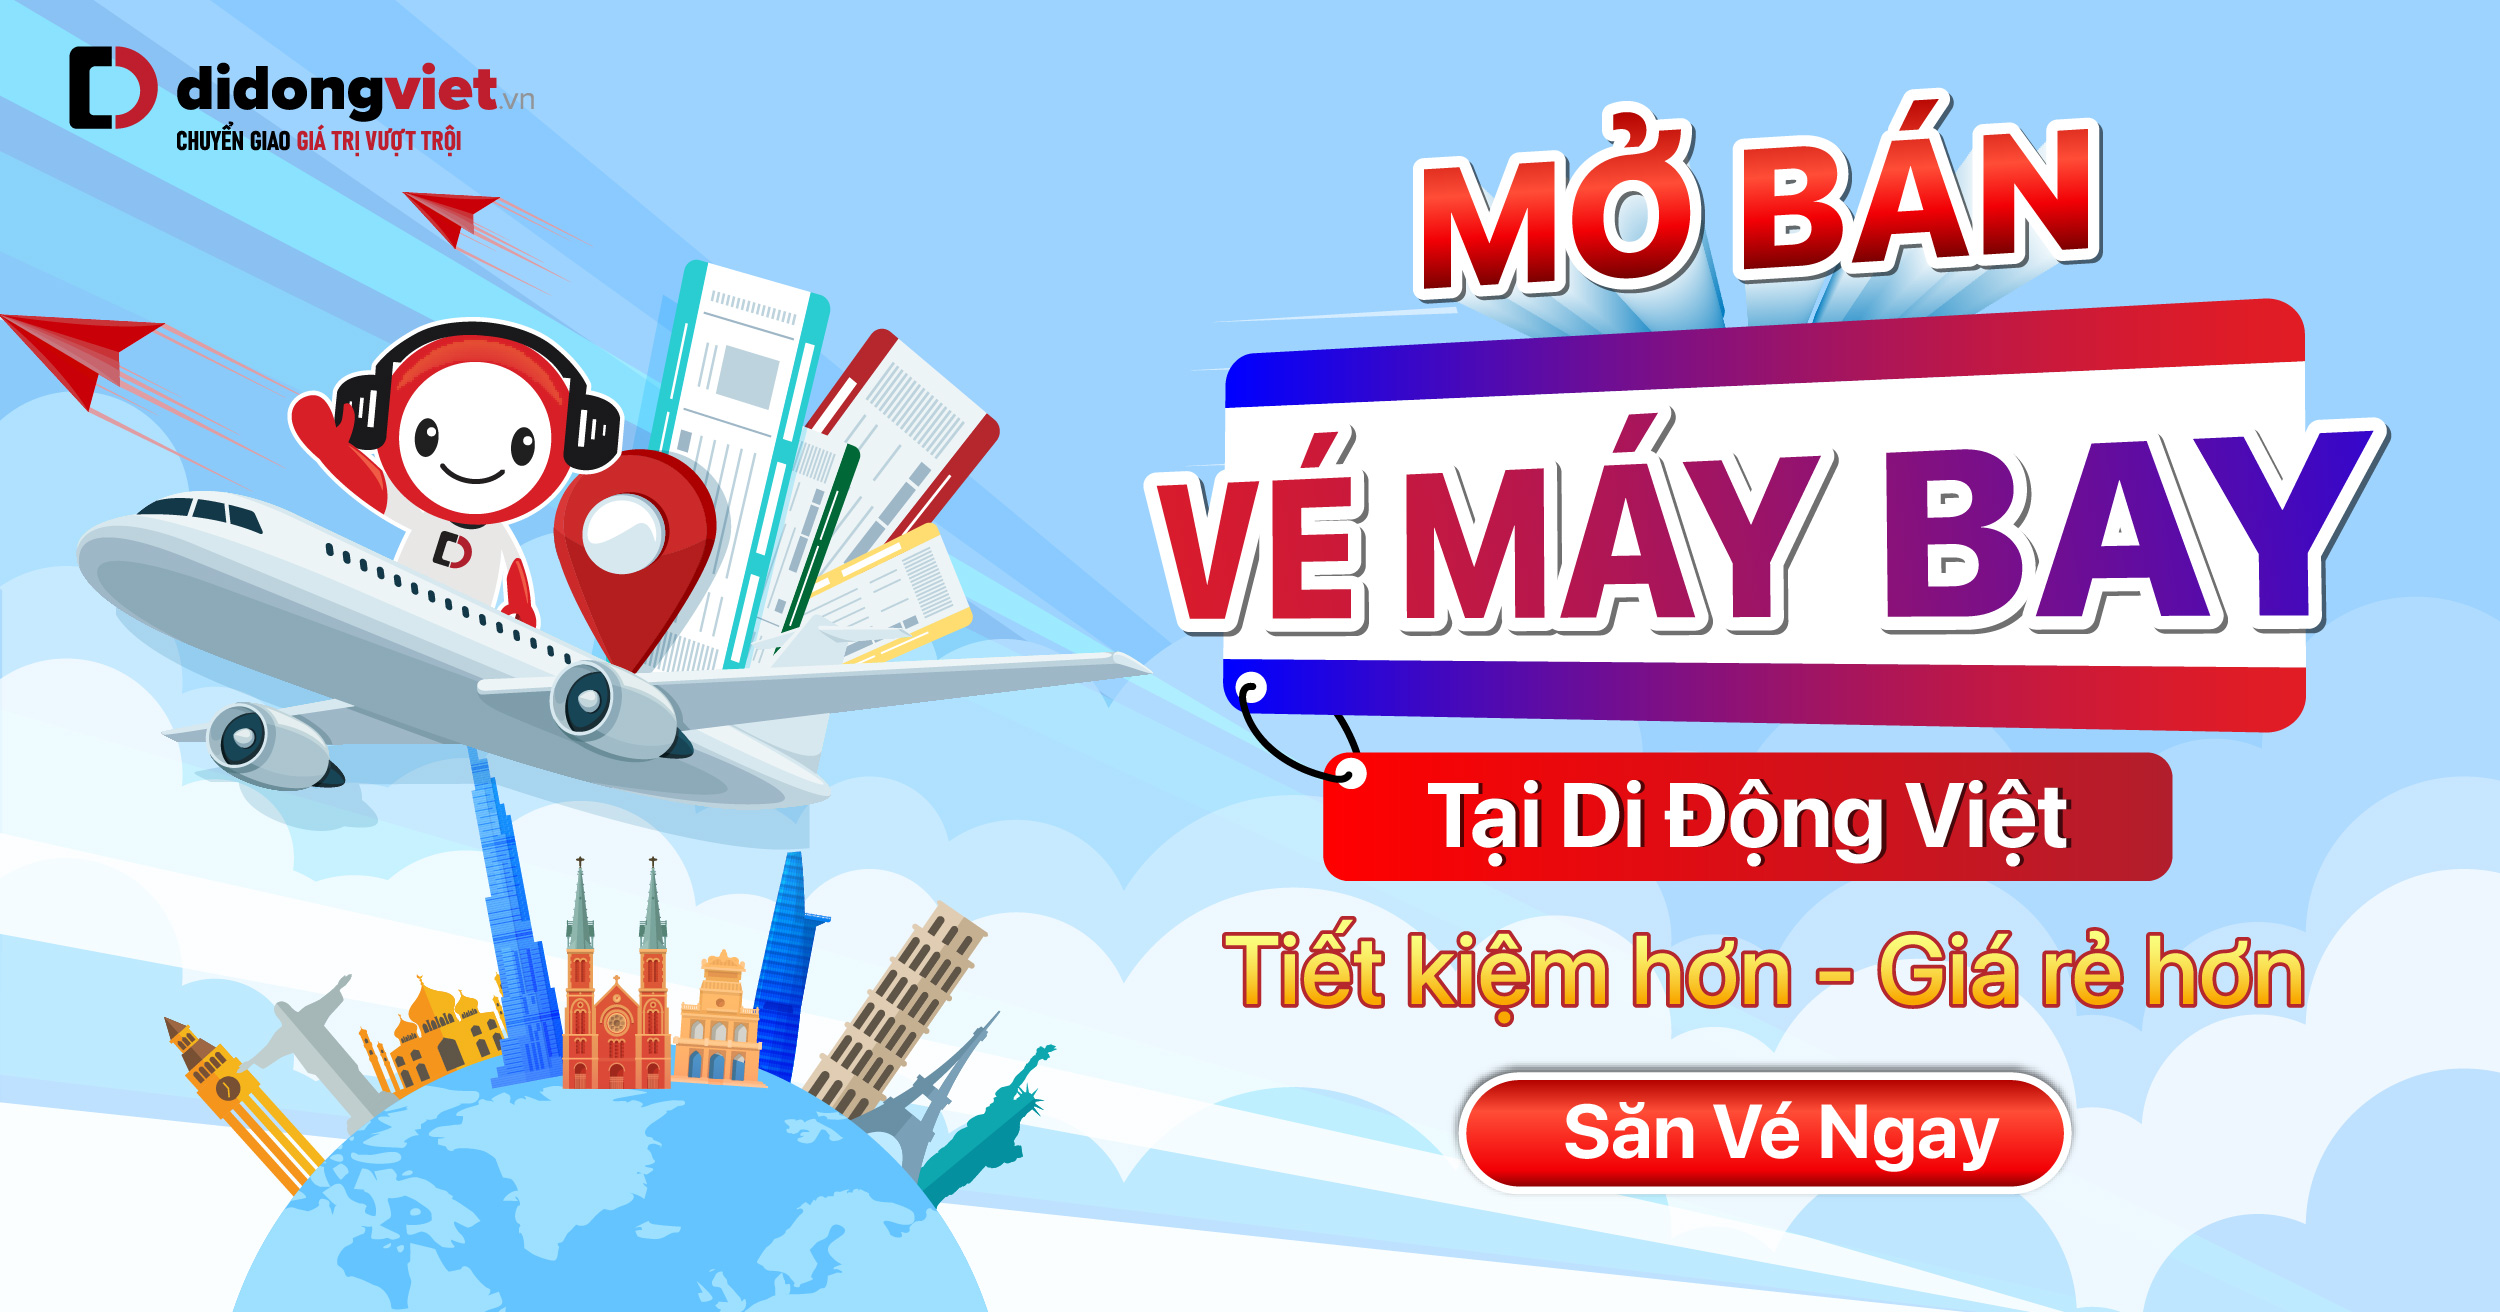 Mở bán Vé Máy Bay, cam kết giá tốt nhất, dịch vụ vượt trội, hỗ trợ 24/7 chỉ có tại Di Động Việt